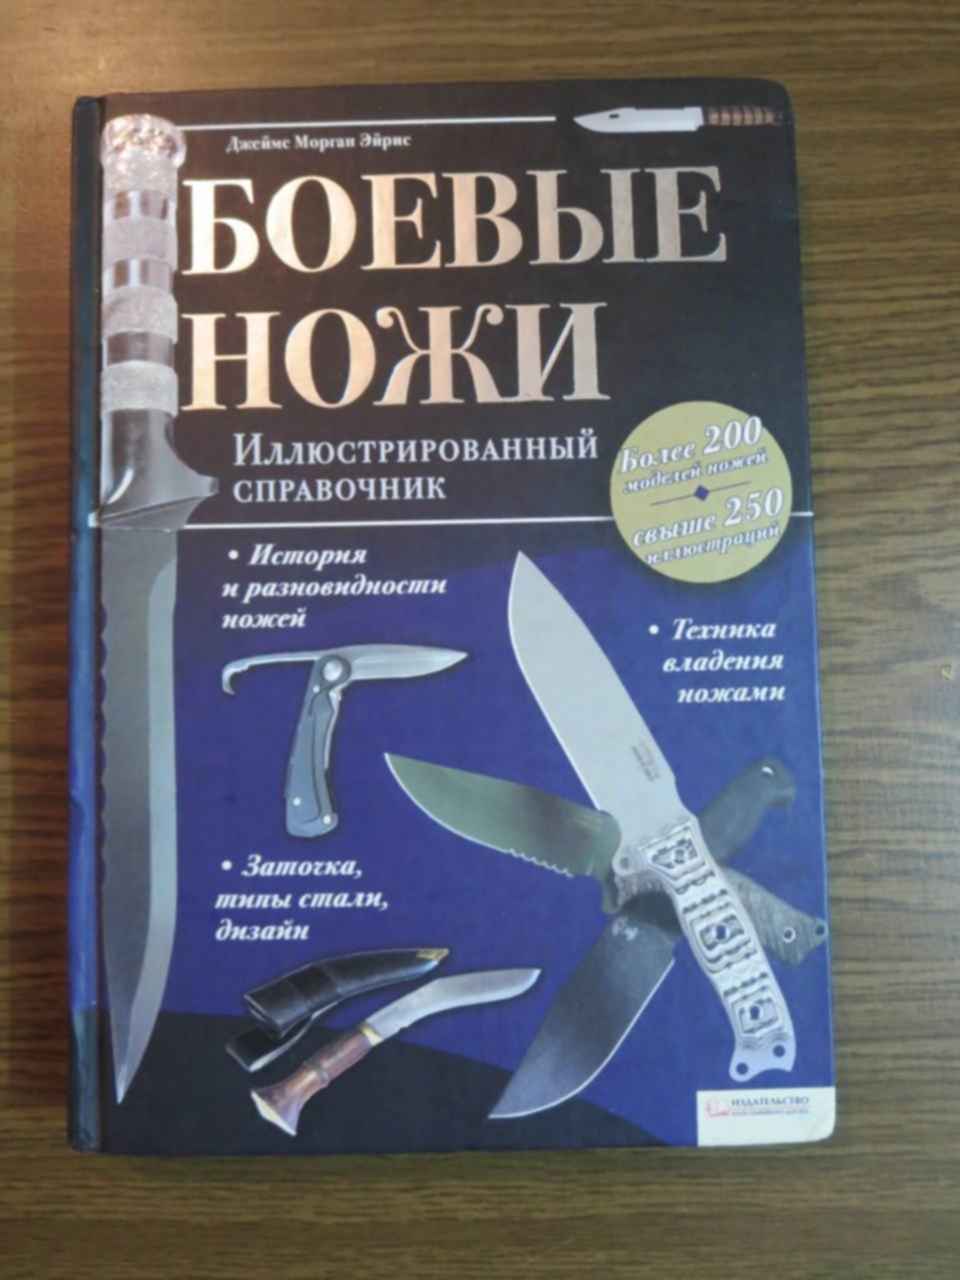 Достать ножи год. Книга ножи. Книга боевые ножи. Достать ножи книга. Книжный нож.